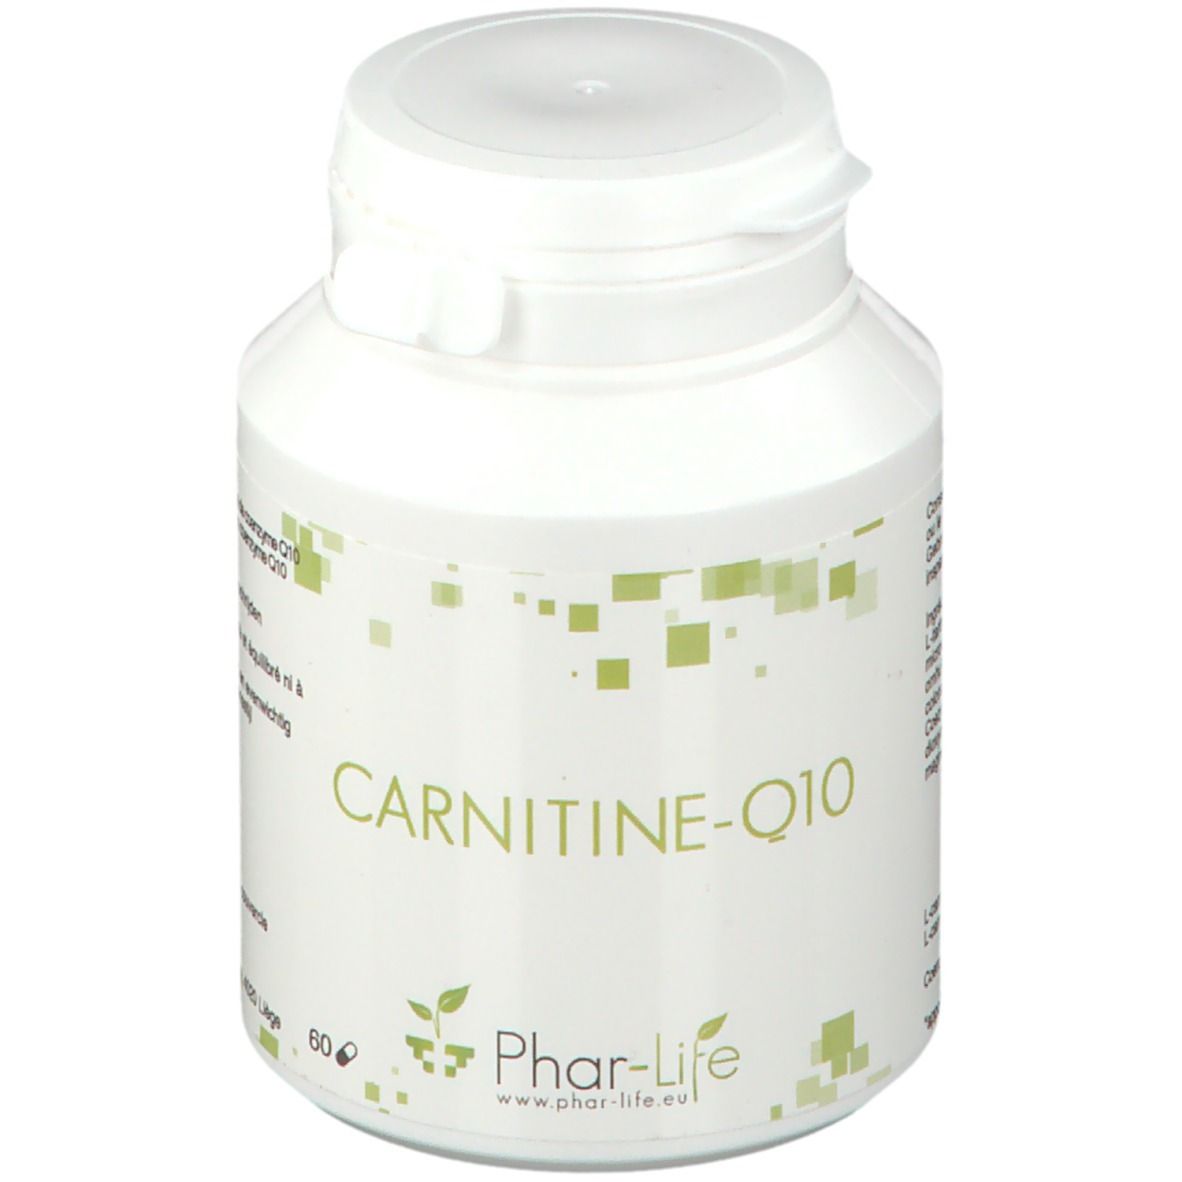 Phar Life Carnitine Q10